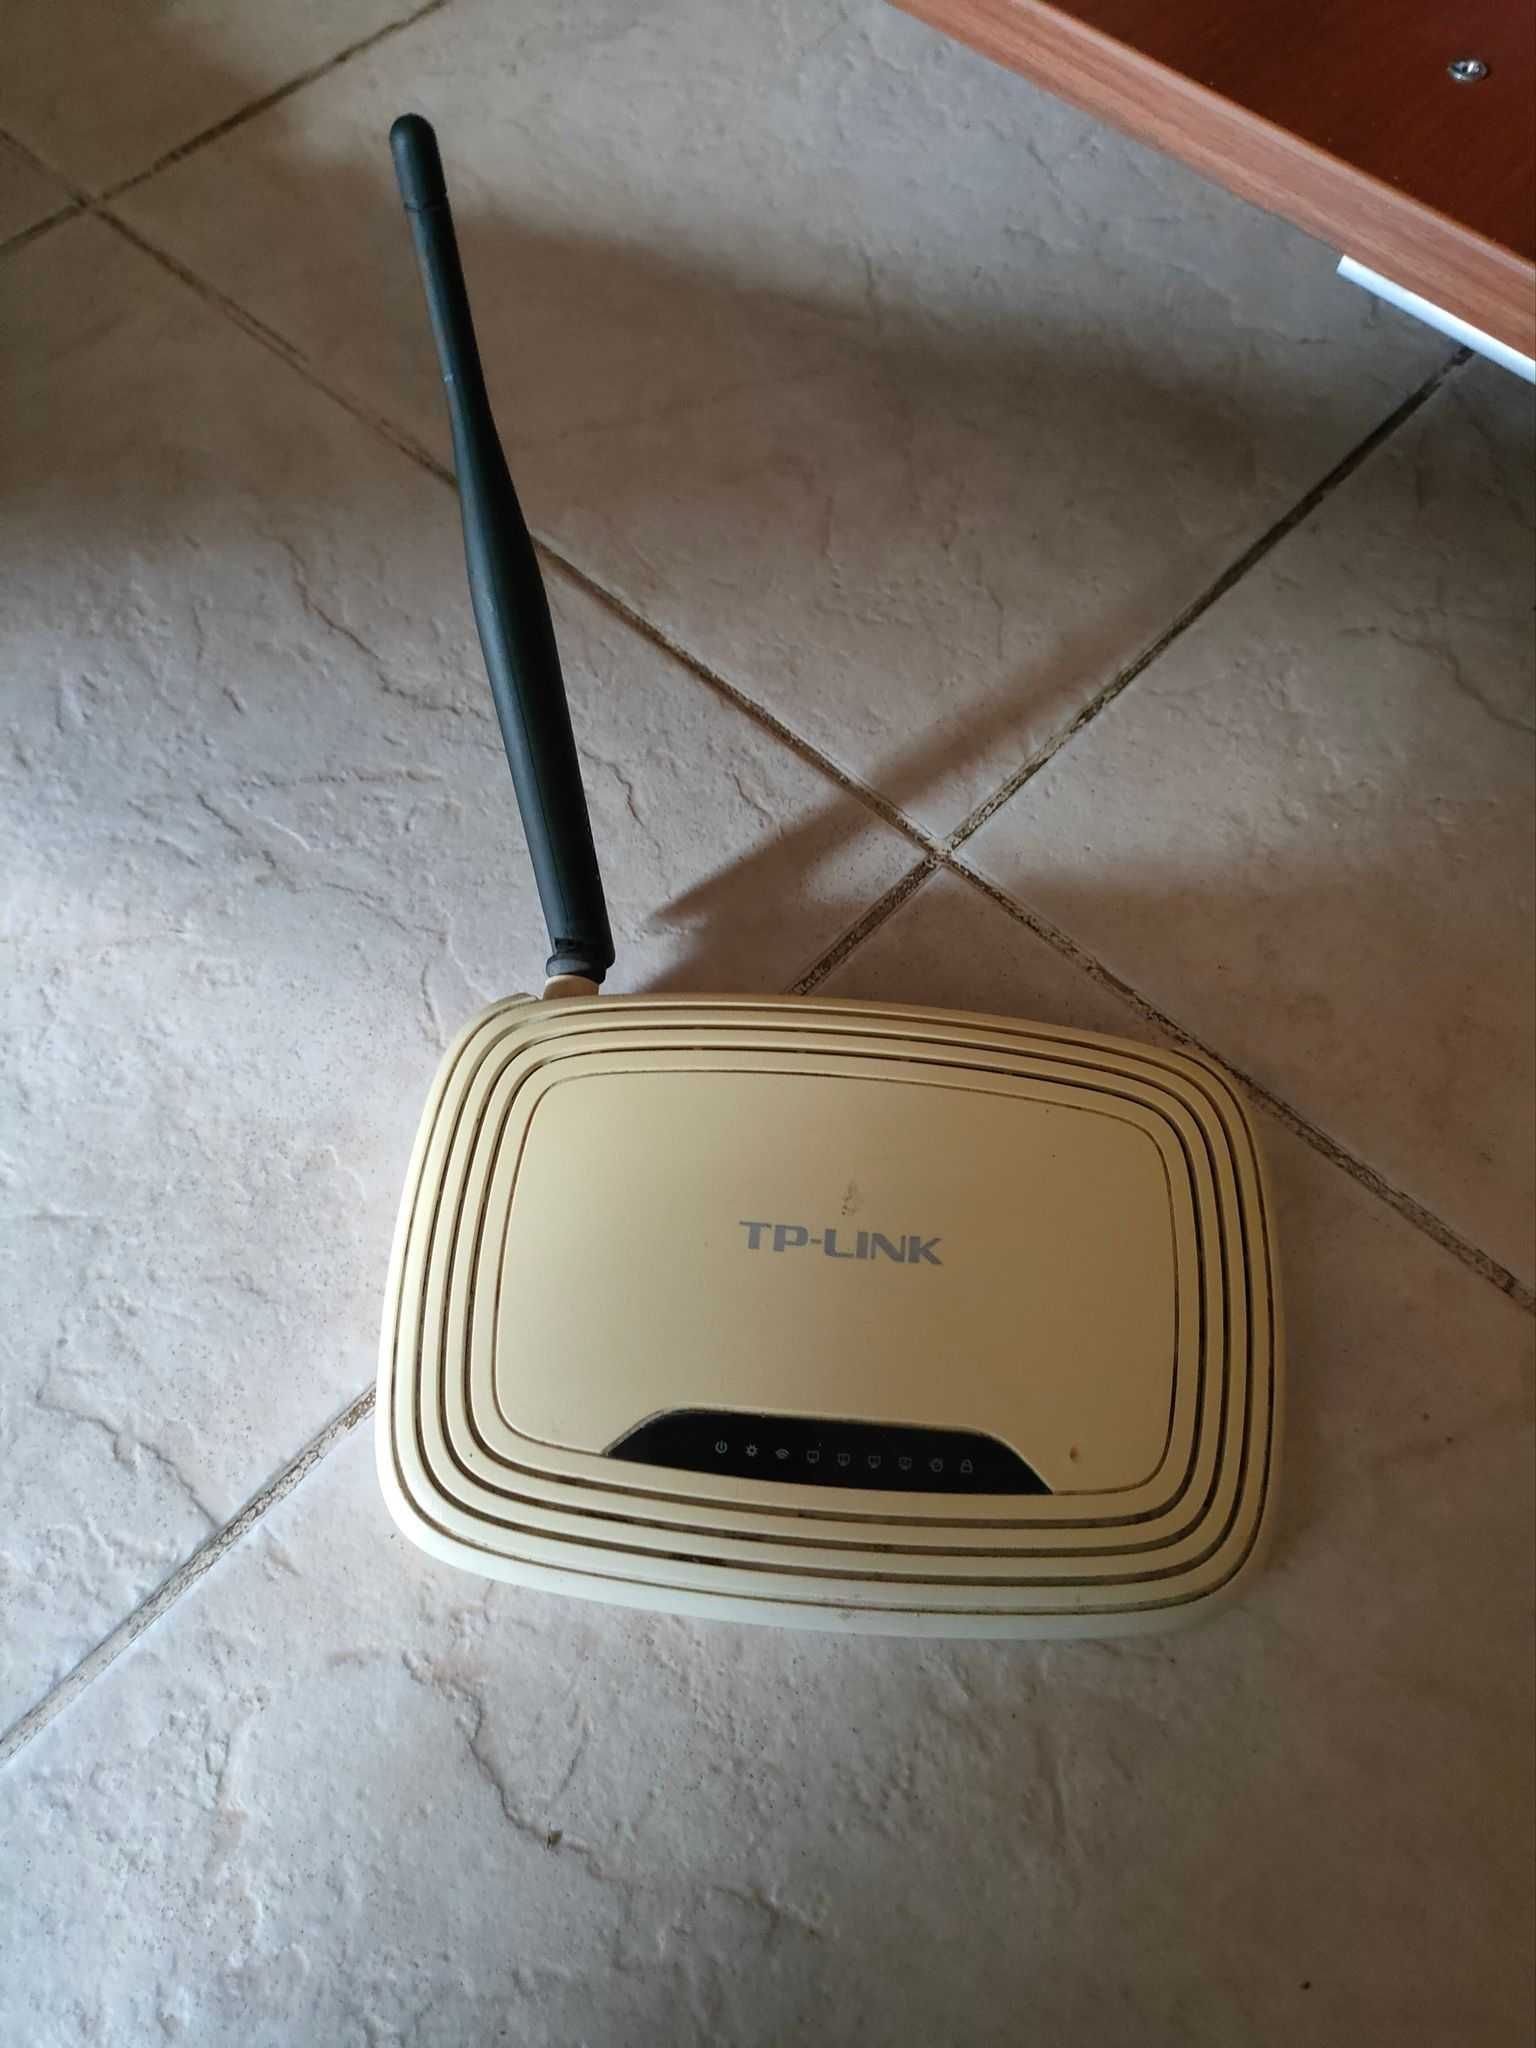 Sprzedam router TP-Link TL-WR740N (802.11b/g/n 150Mb/s).